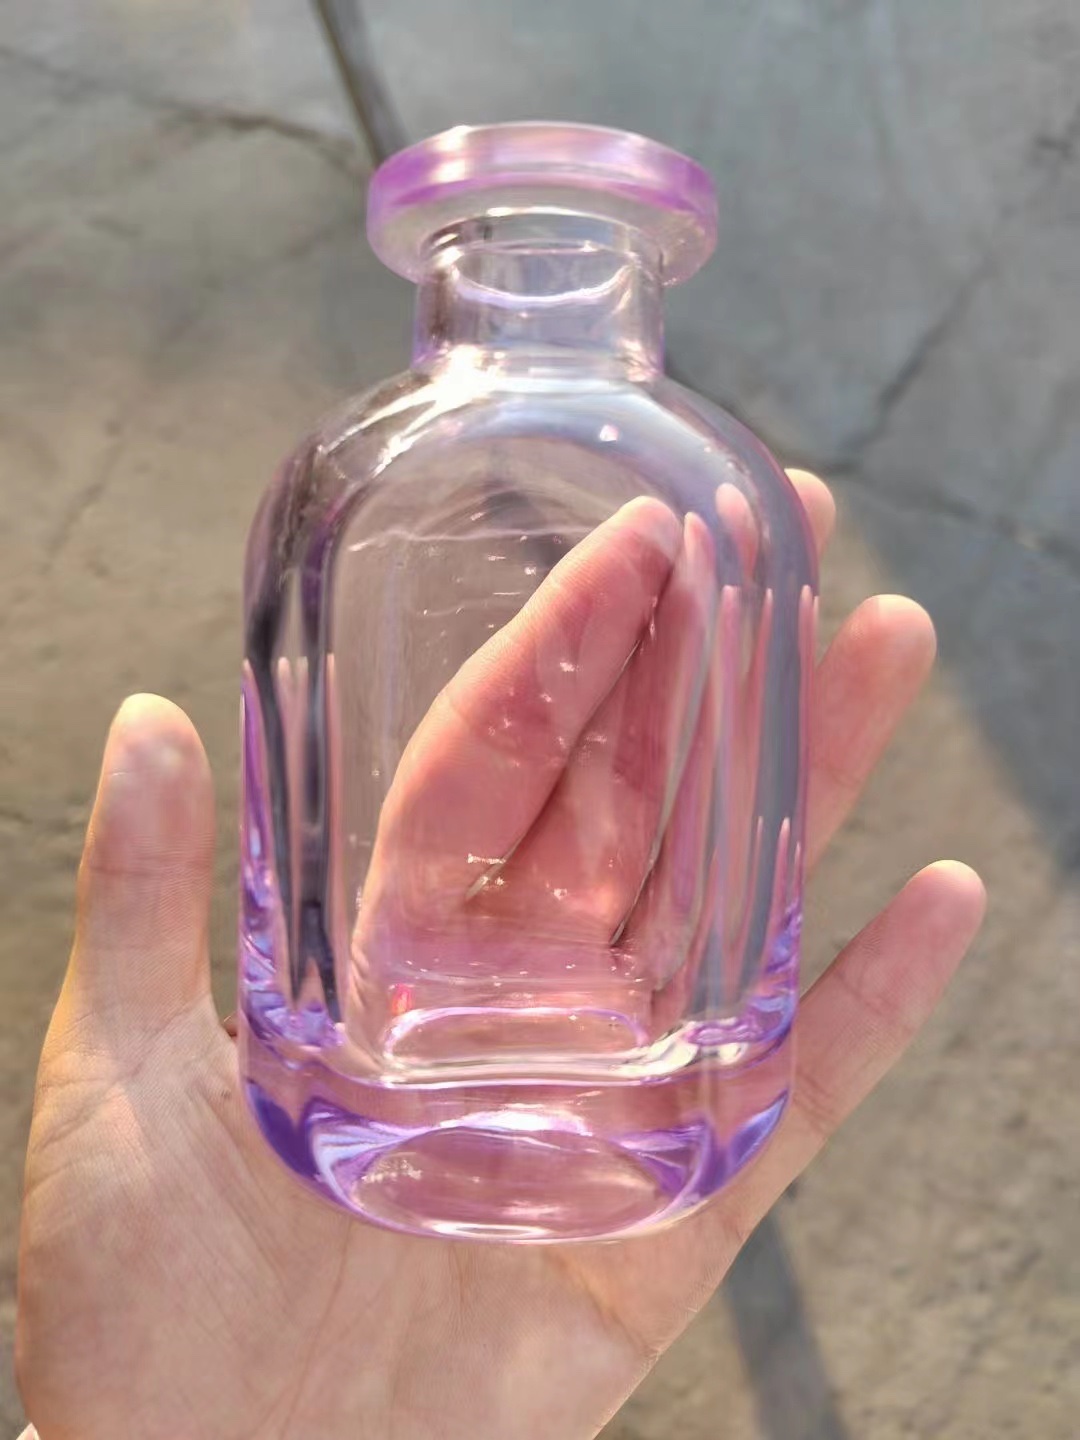 厚的玻璃厂玻璃瓶 